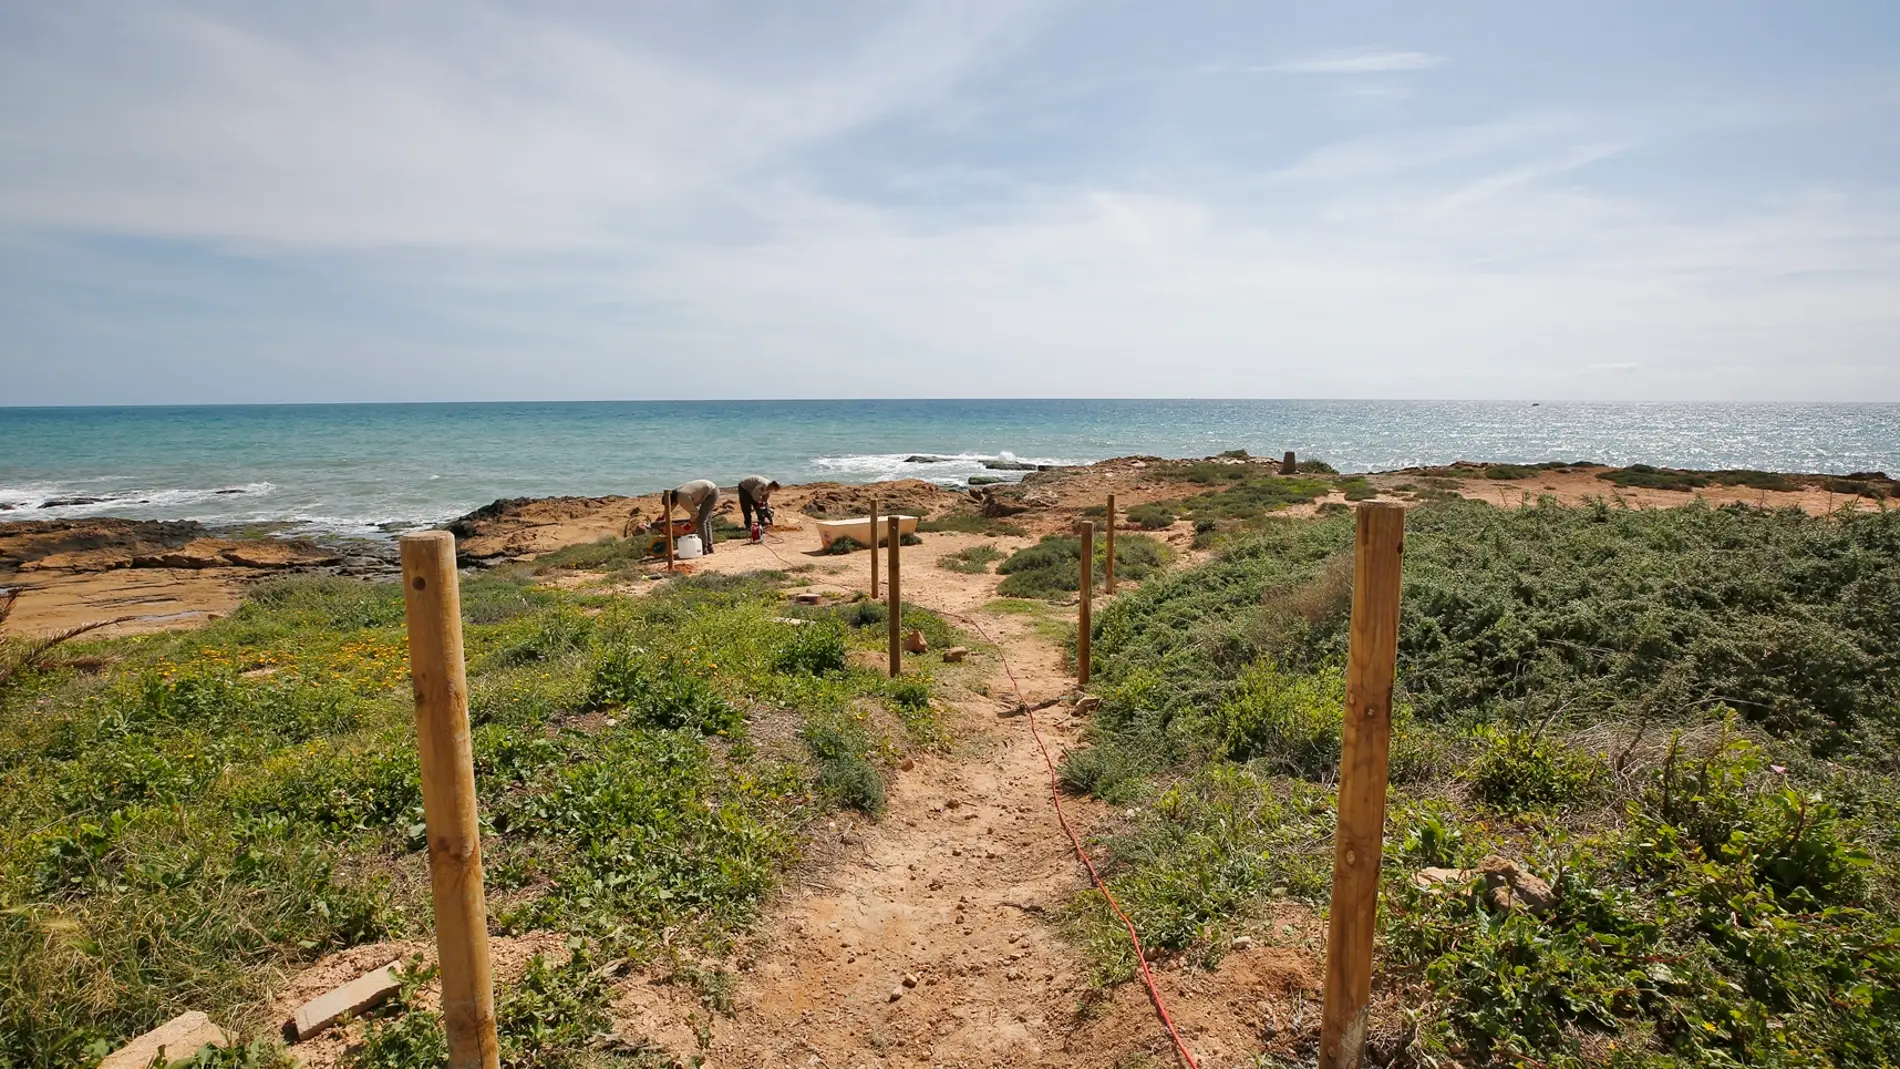 La actuación se enmarca en las labores de conservación de la biodiversidad local, especialmente ligada a zonas litorales colindantes a playas galardonadas con Bandera Azul 